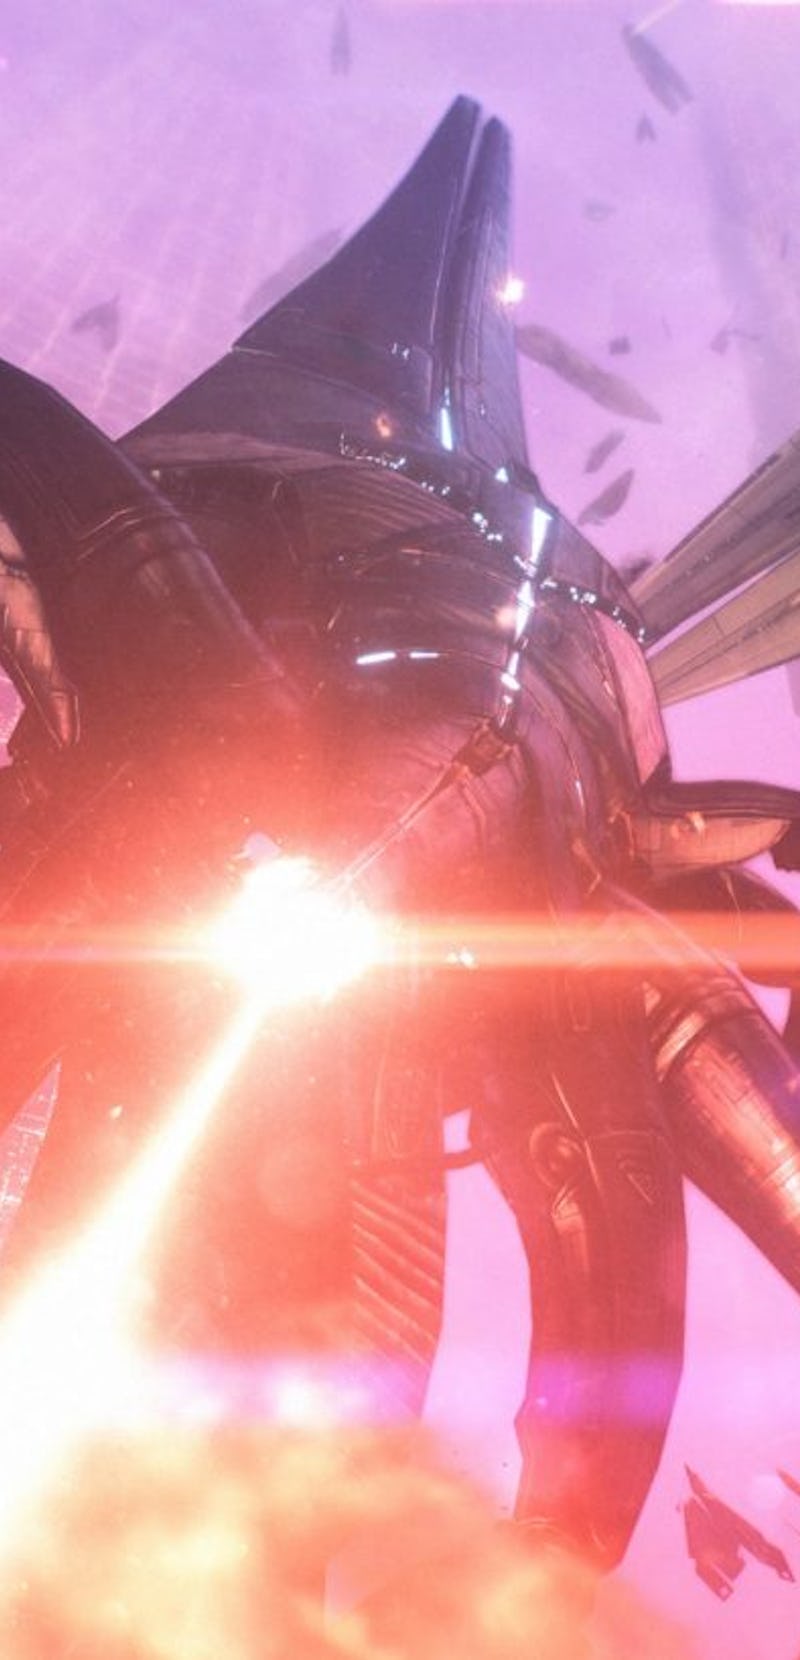 screenshot of Reaper from Mass Effect Legendary Edition